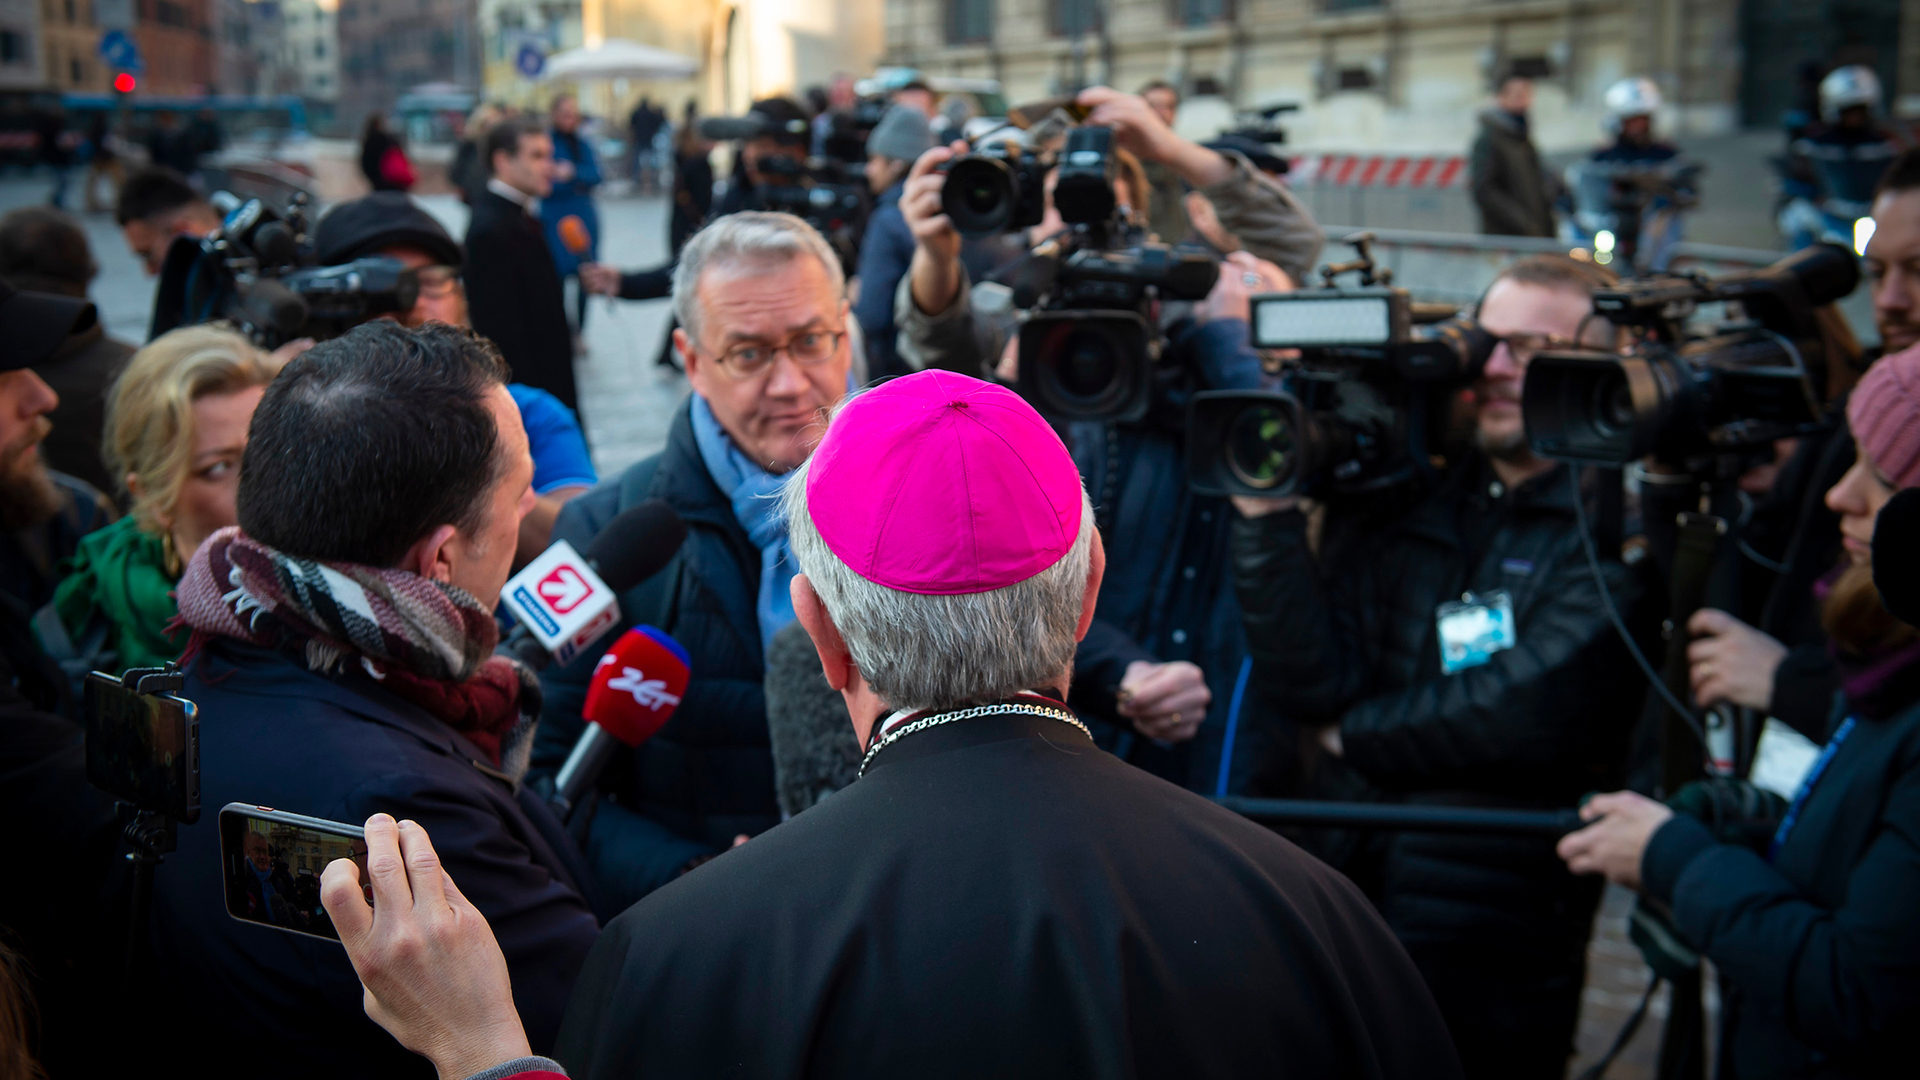 Des évêques du monde entier se sont exprimés publiquement pour souligner le “défi urgent” de répondre aux abus | Antoine Mekary | ALETEIA | I.Media